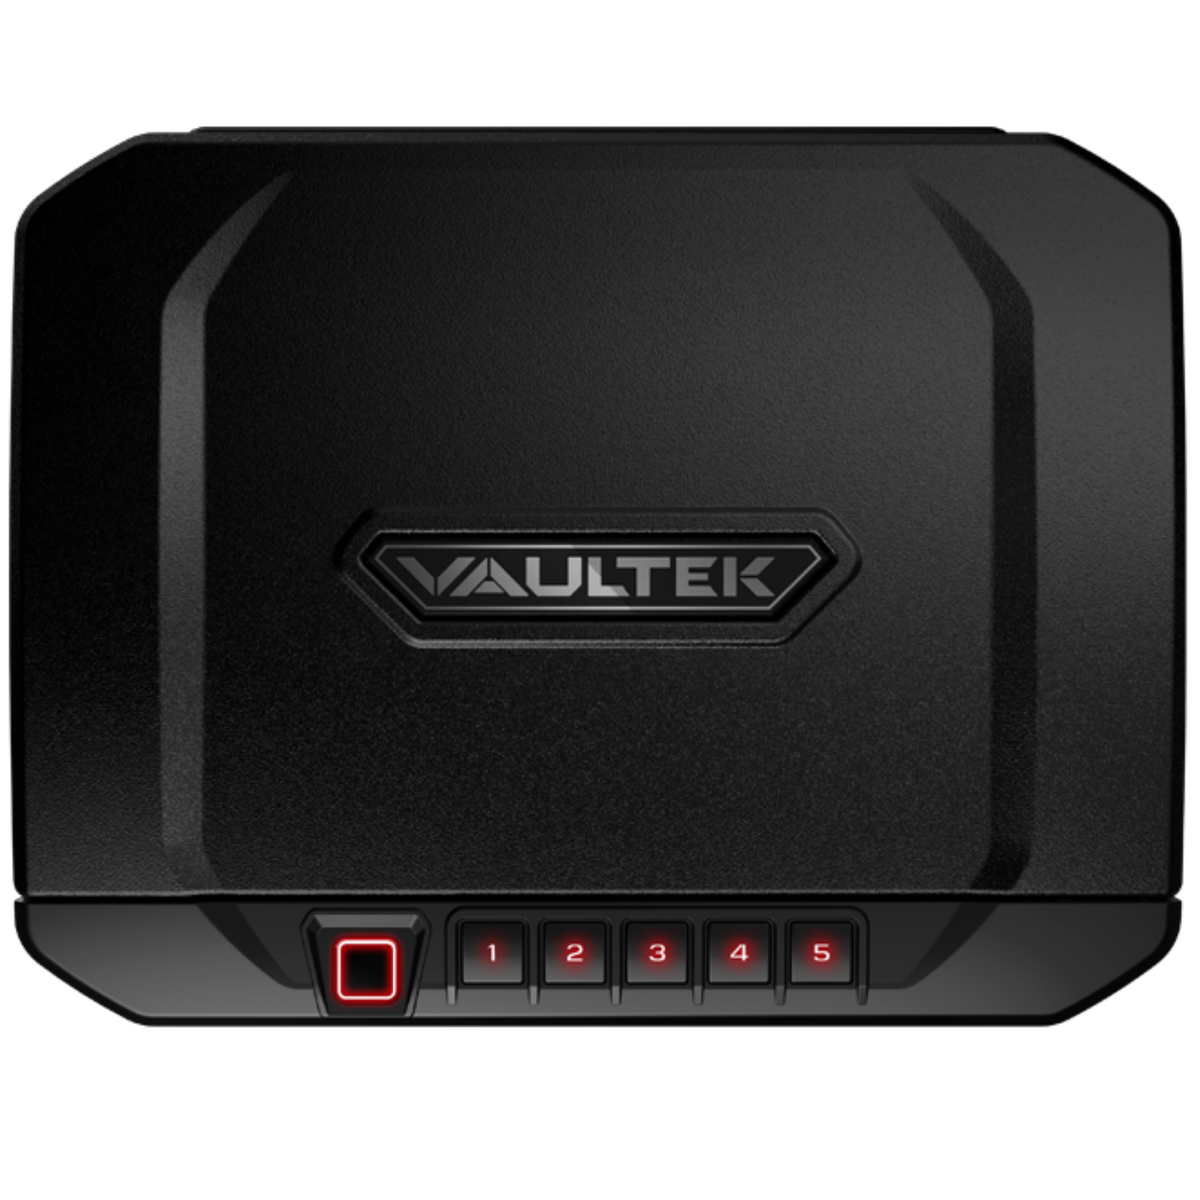 VAULTEK | VT10i - Bluetooth - Biometric | Liberty Safe Norcal.